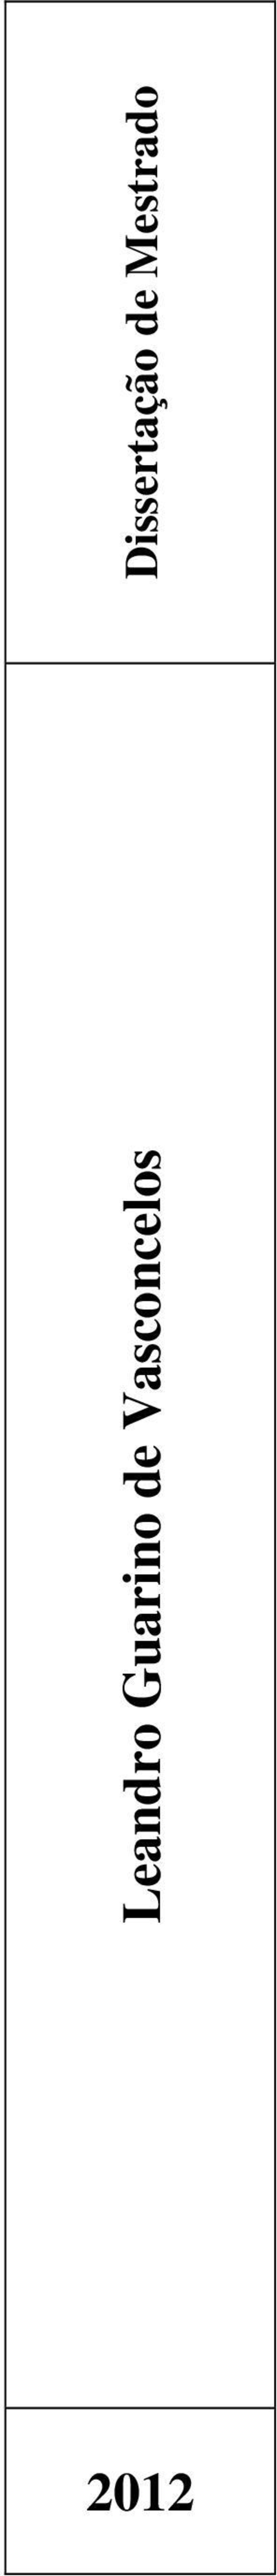 Vasconcelos